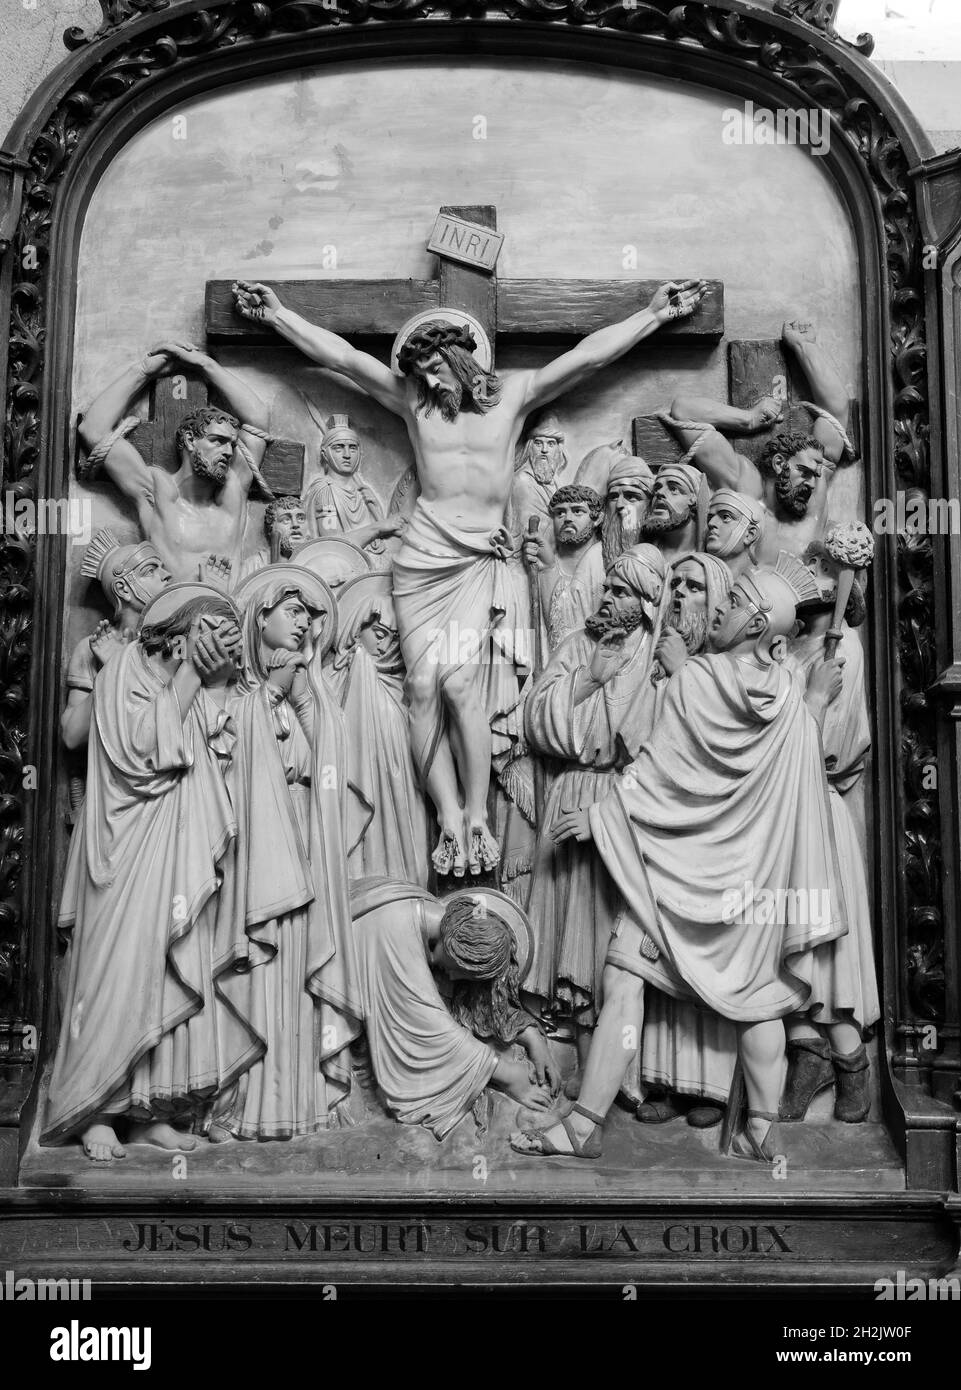 Douzième station - Jésus meurt sur la croix Stock Photo